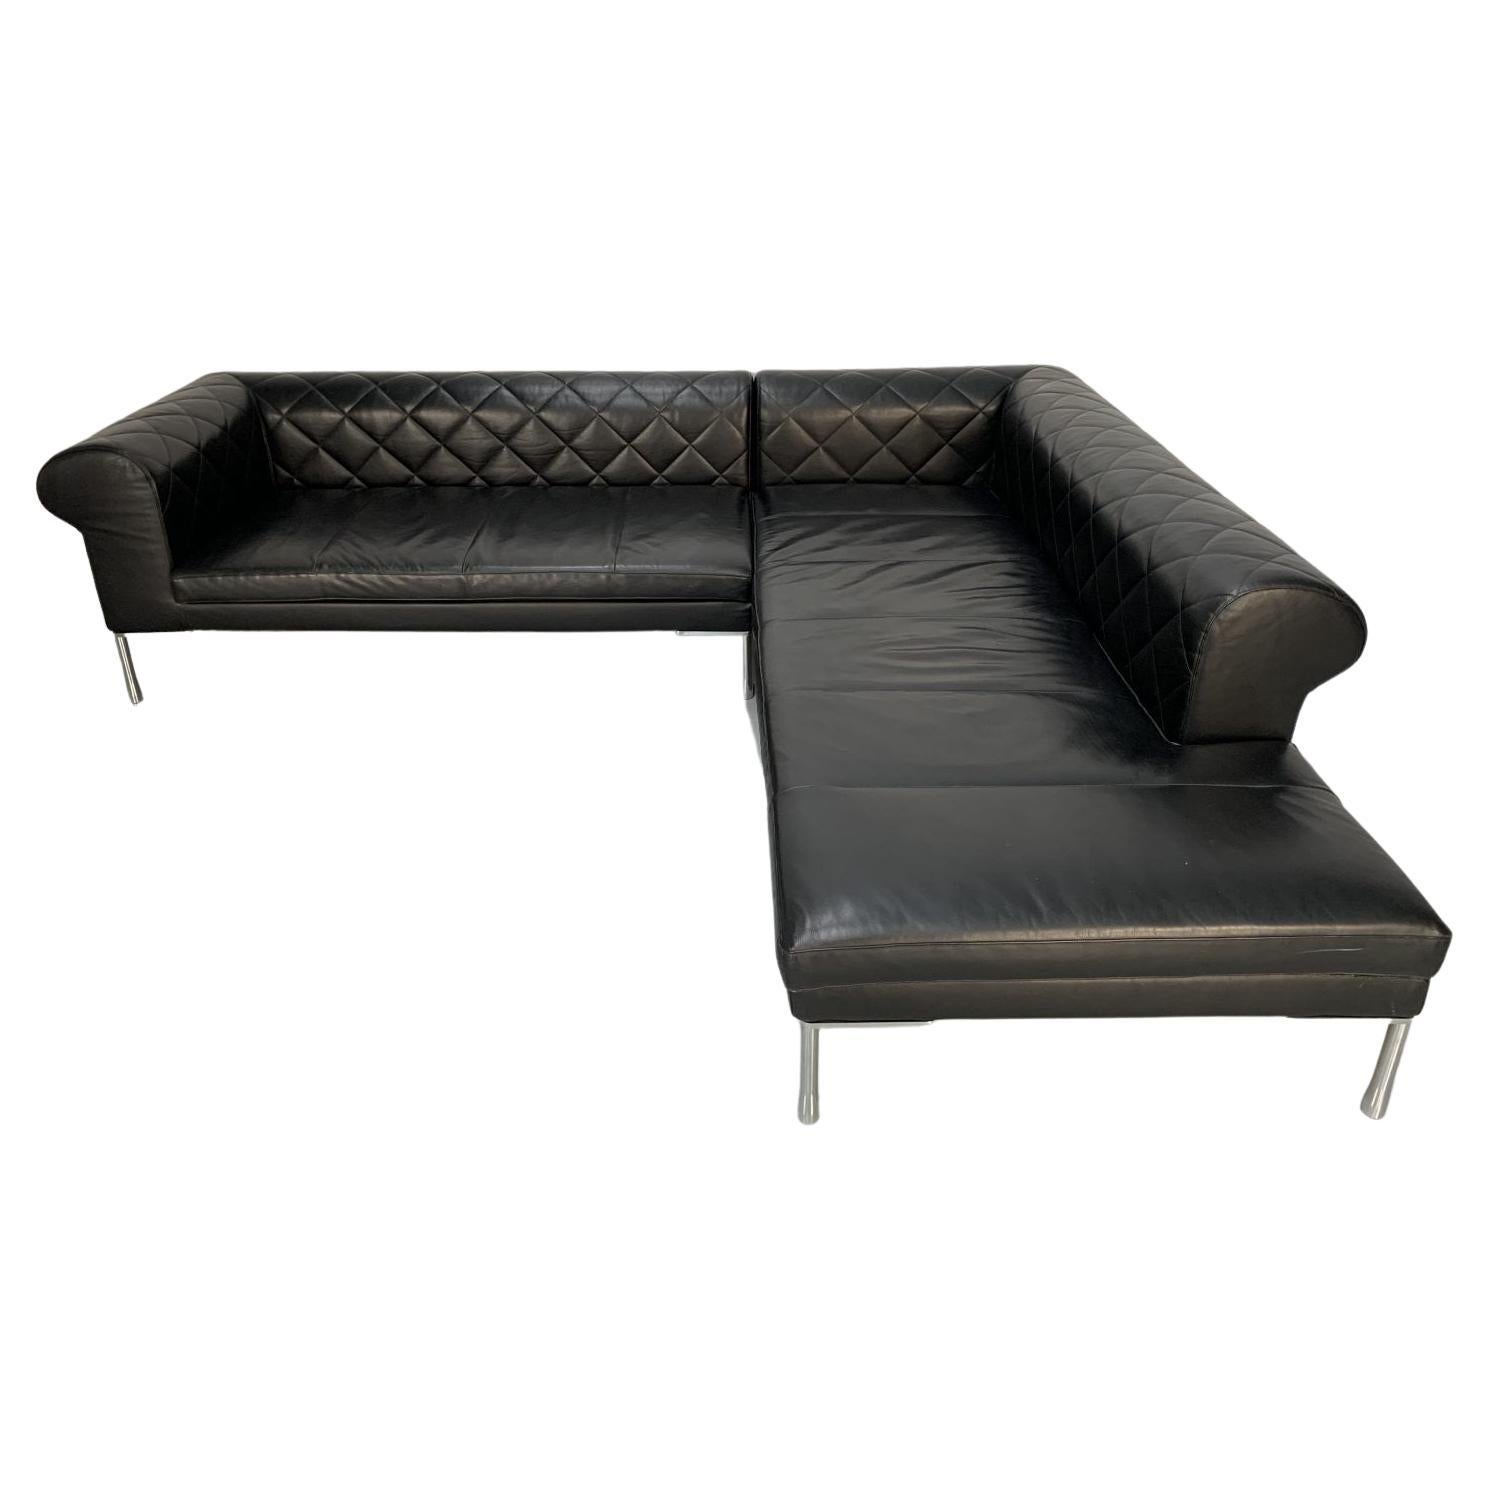 Zanotta “1320 Barocco” Sofa, L- Shape 5-Seat, in Black “Pelle” Leather For Sale